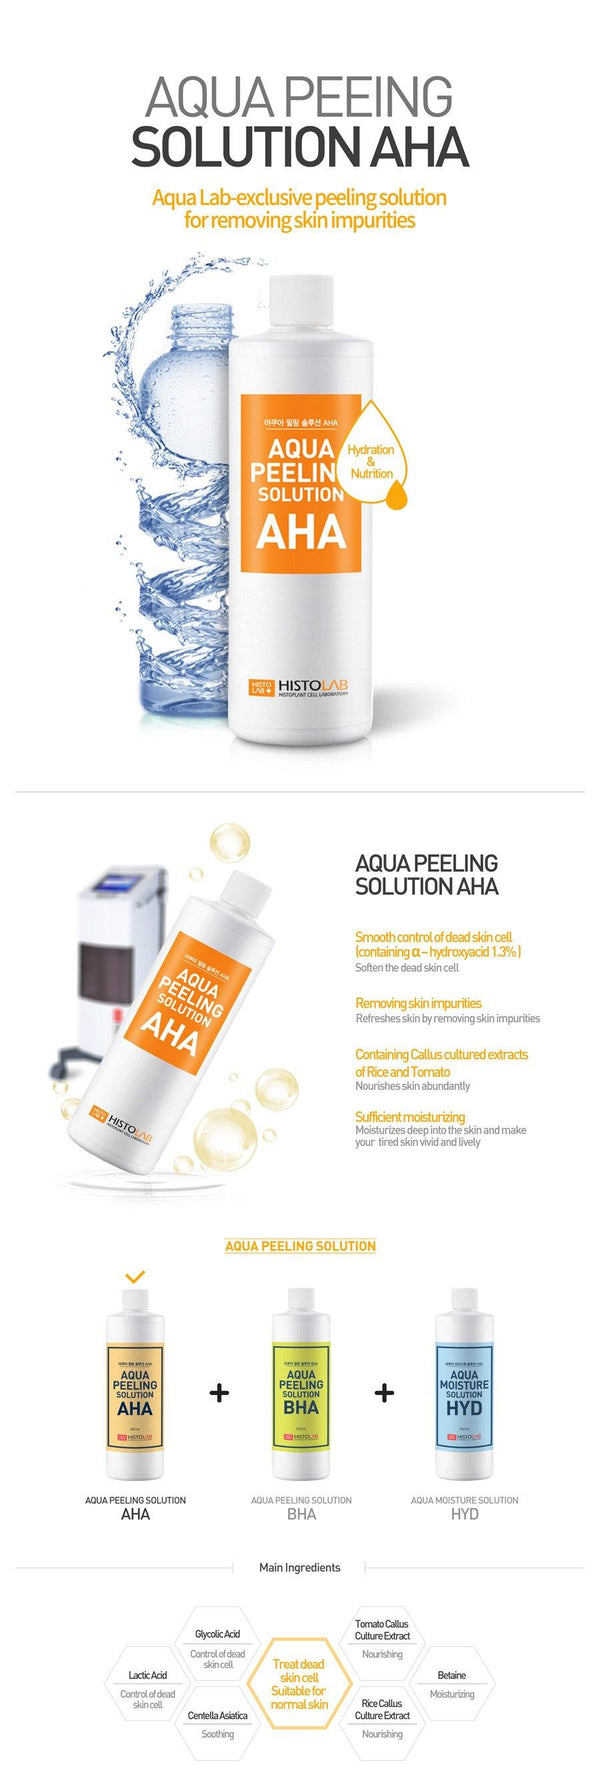 Aqua Peeling Solution AHA - HistoLab Canada